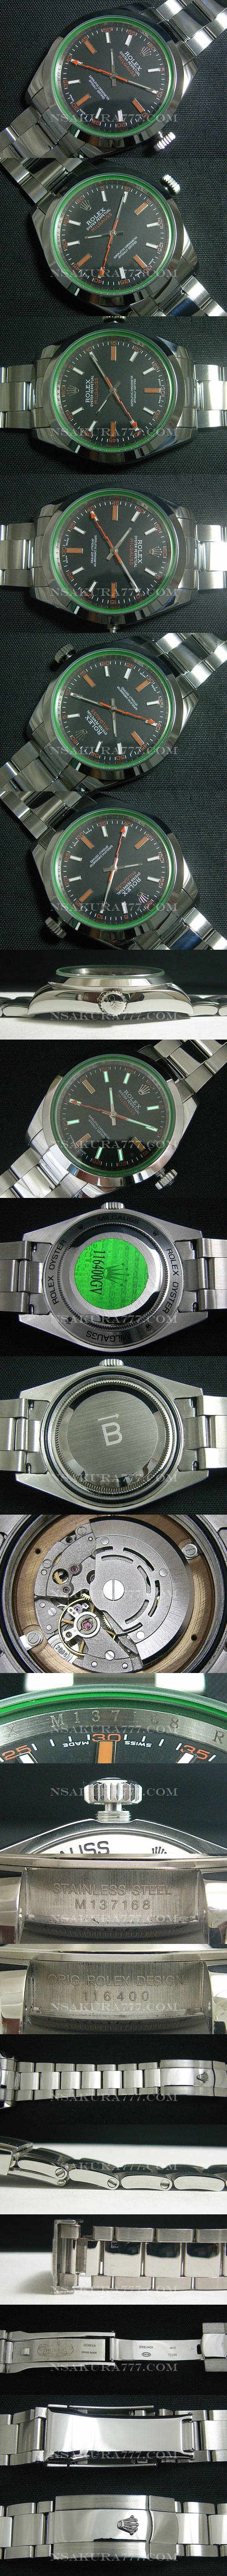 レプリカ時計ロレックス ミルガウス 21600振動 オートマティック - ウインドウを閉じる